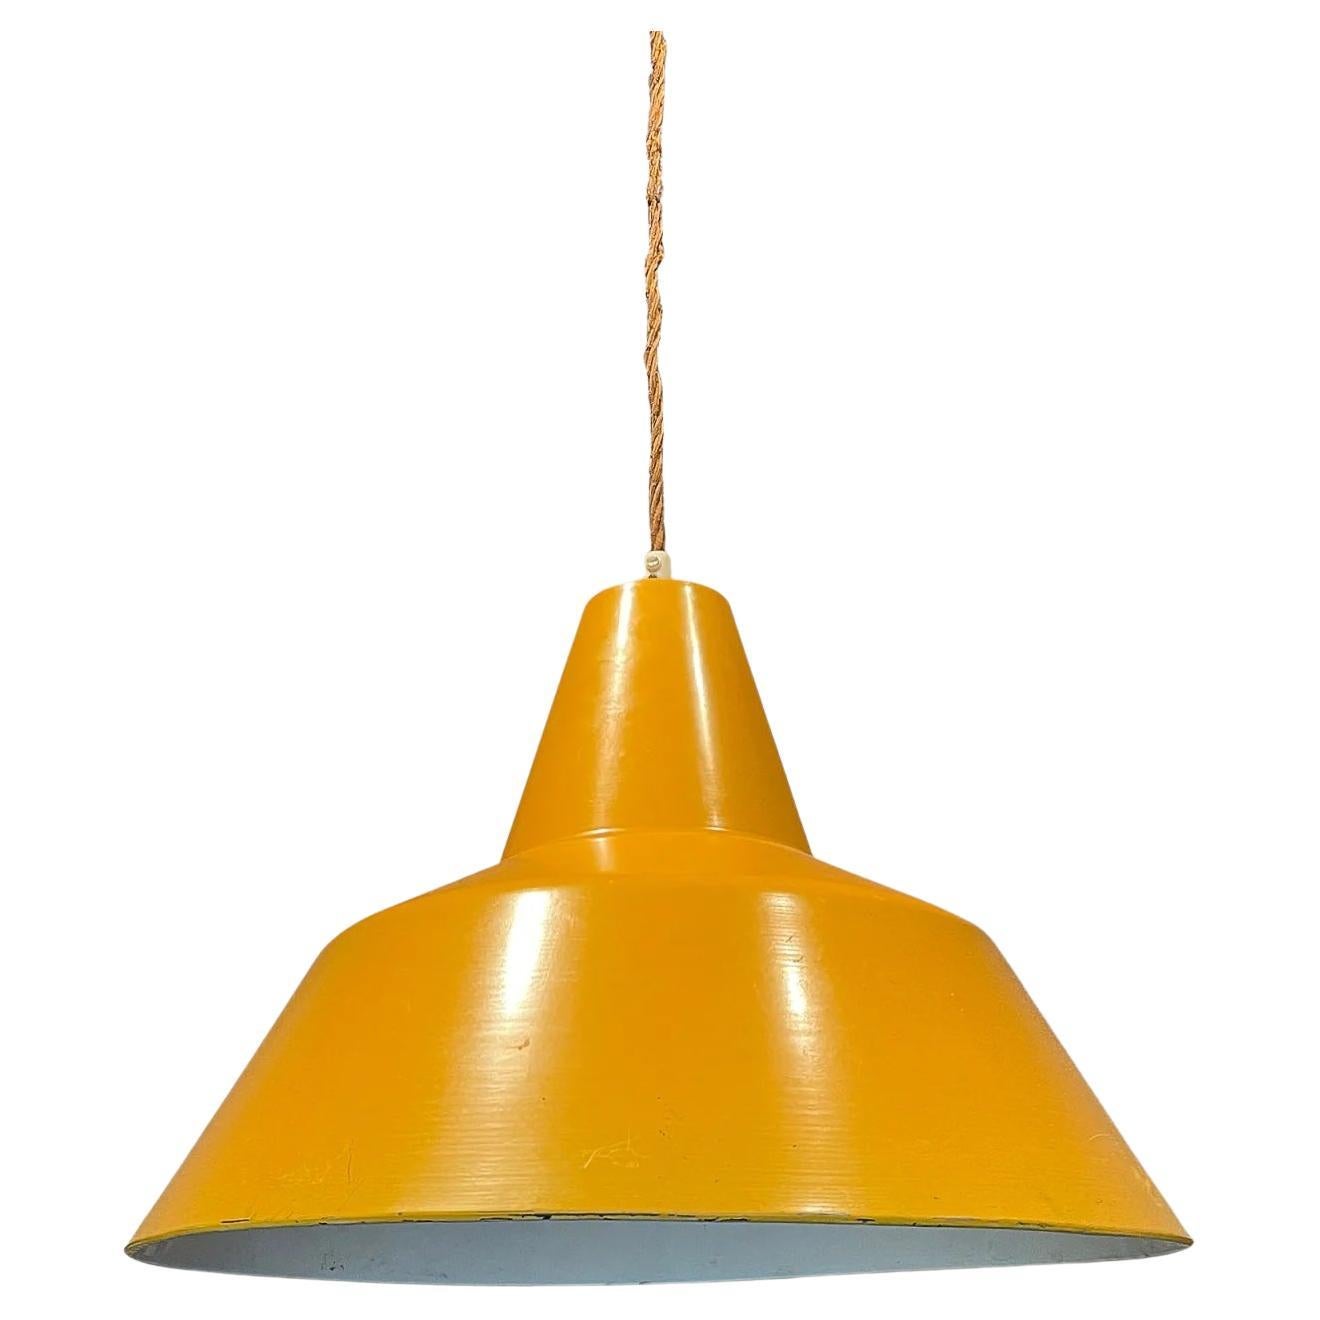 Gelb emaillierte Metall-Hngelampe